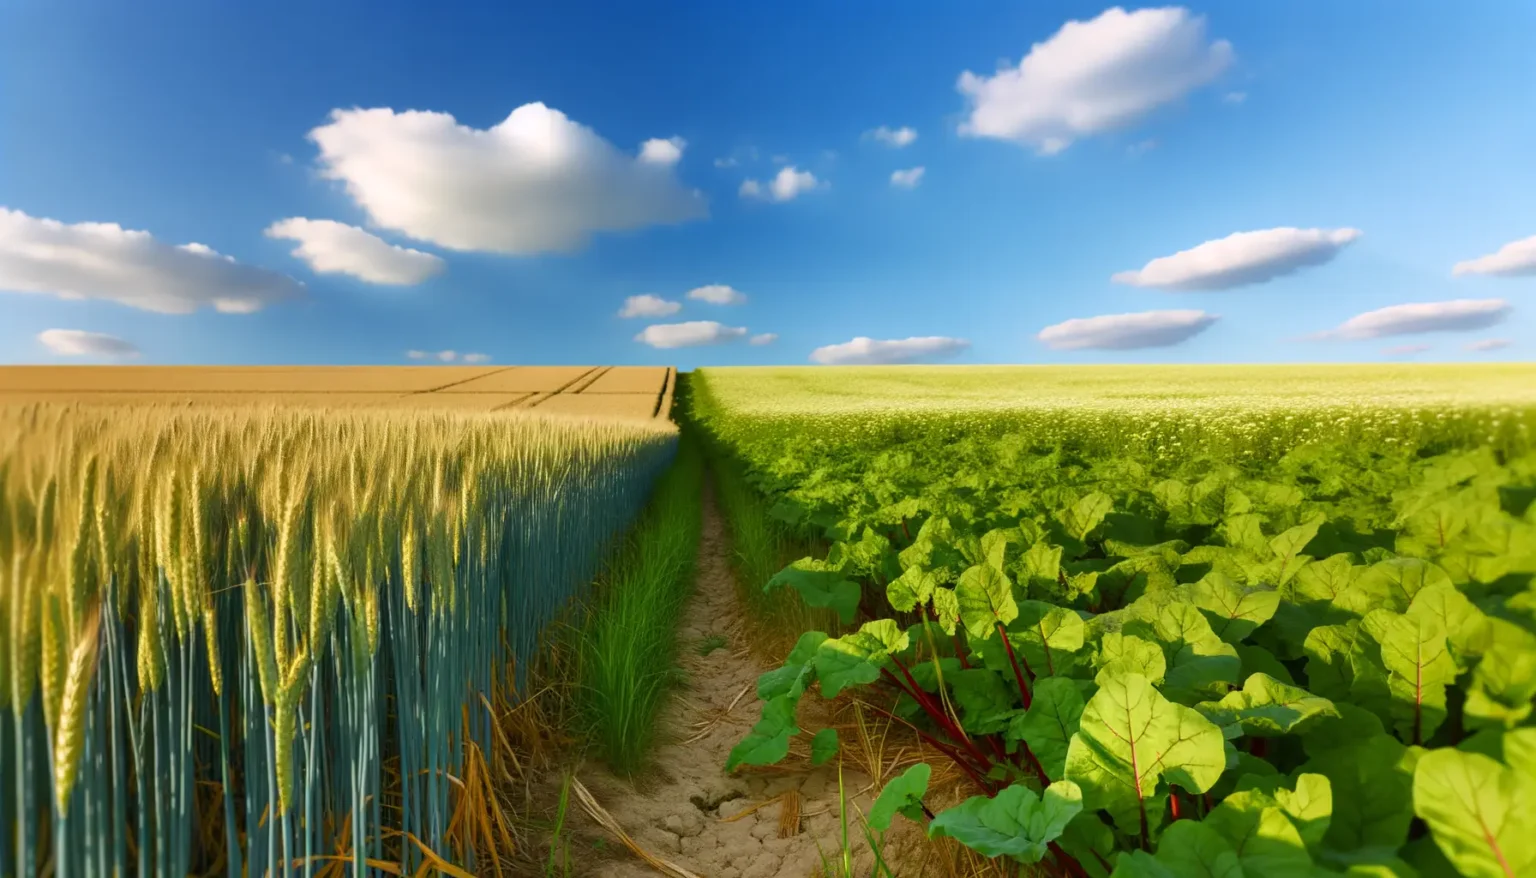 Ein Pfad trennt zwei landwirtschaftliche Felder unter einem blauen Himmel mit flauschigen Wolken; links ein Feld mit goldgelben reifen Weizenähren und rechts ein Feld mit grünen Blättern von Rhabarber oder einer ähnlichen Pflanze.